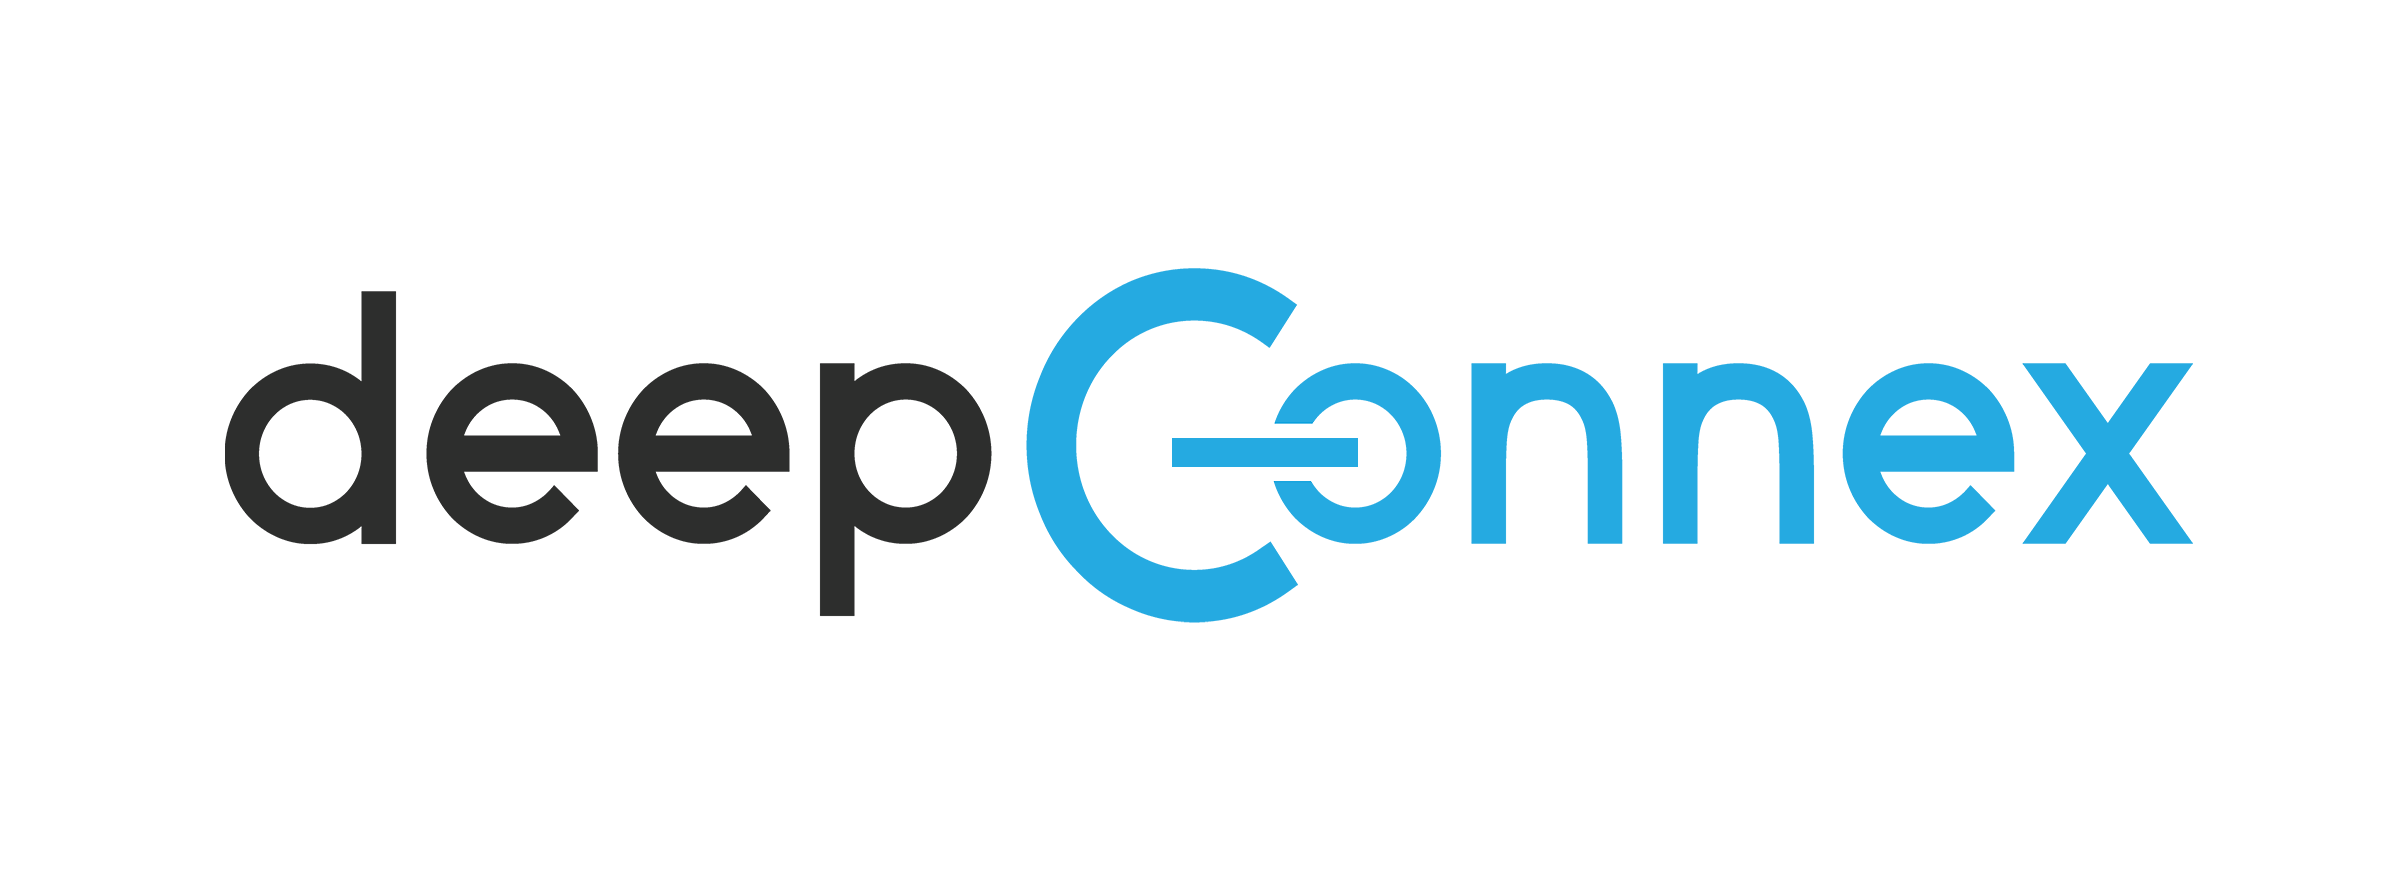 deepconnex logo